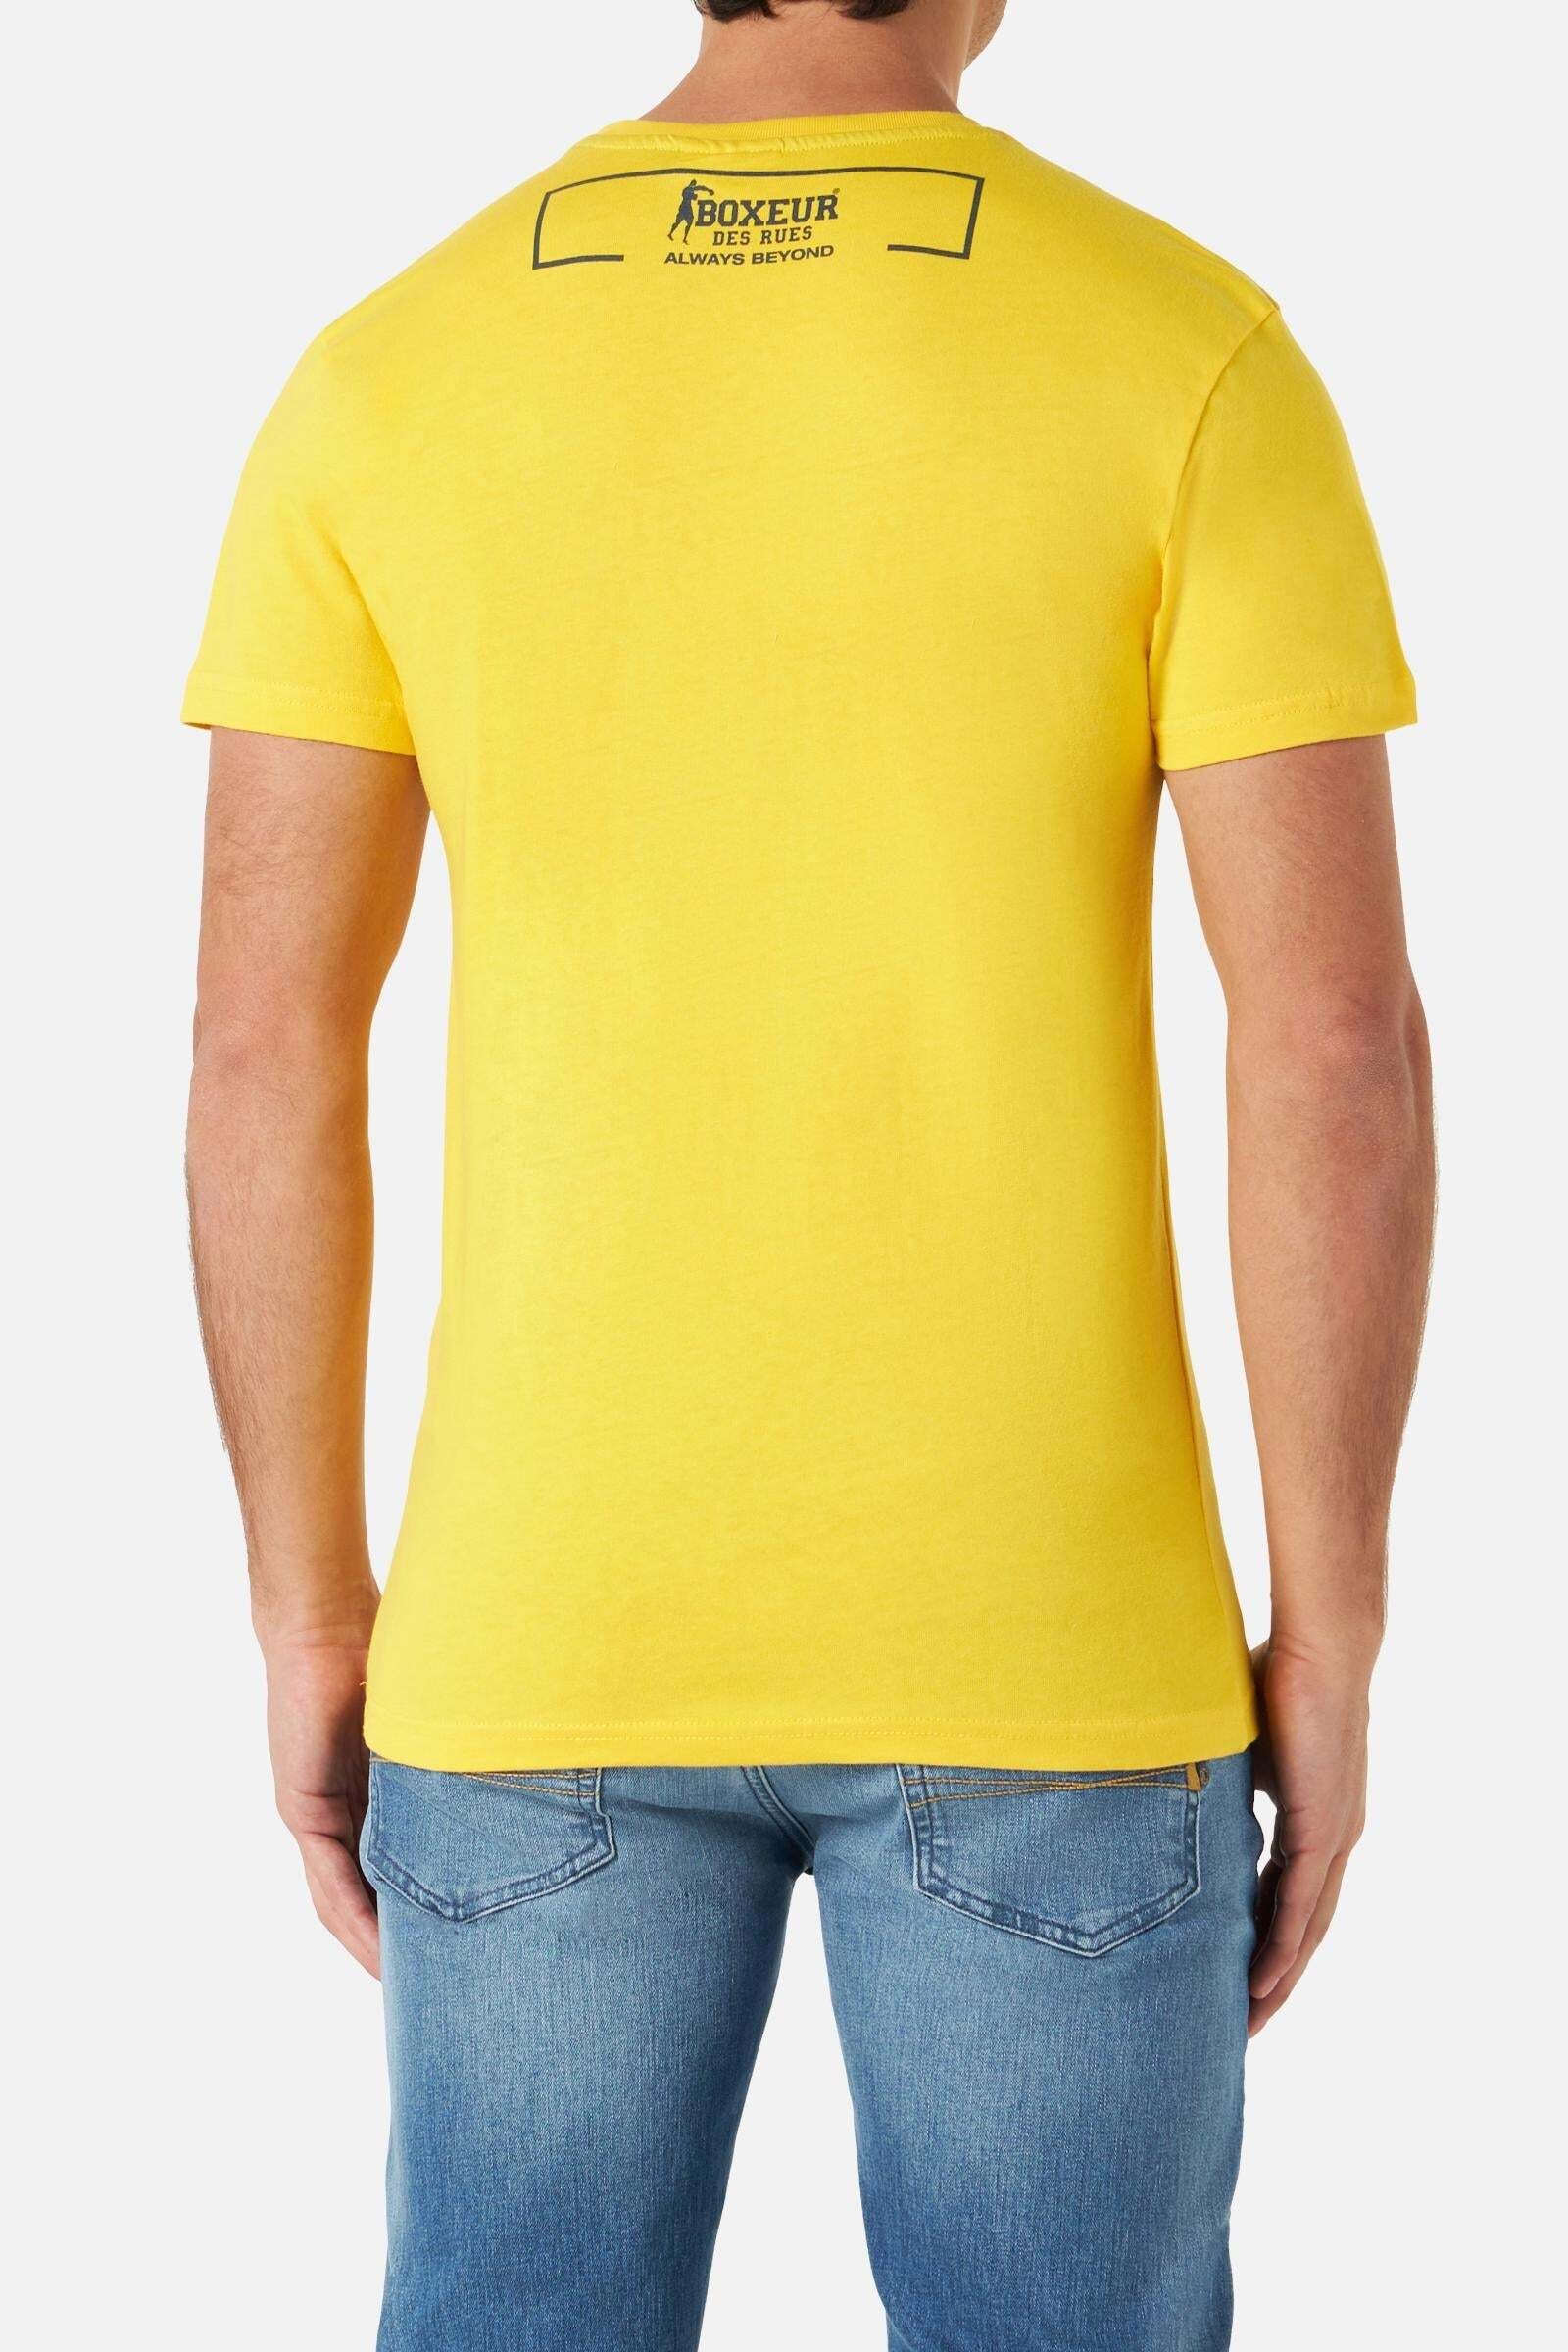 BOXEUR DES RUES T-Shirt »TShirtsRoundneckTShirt«